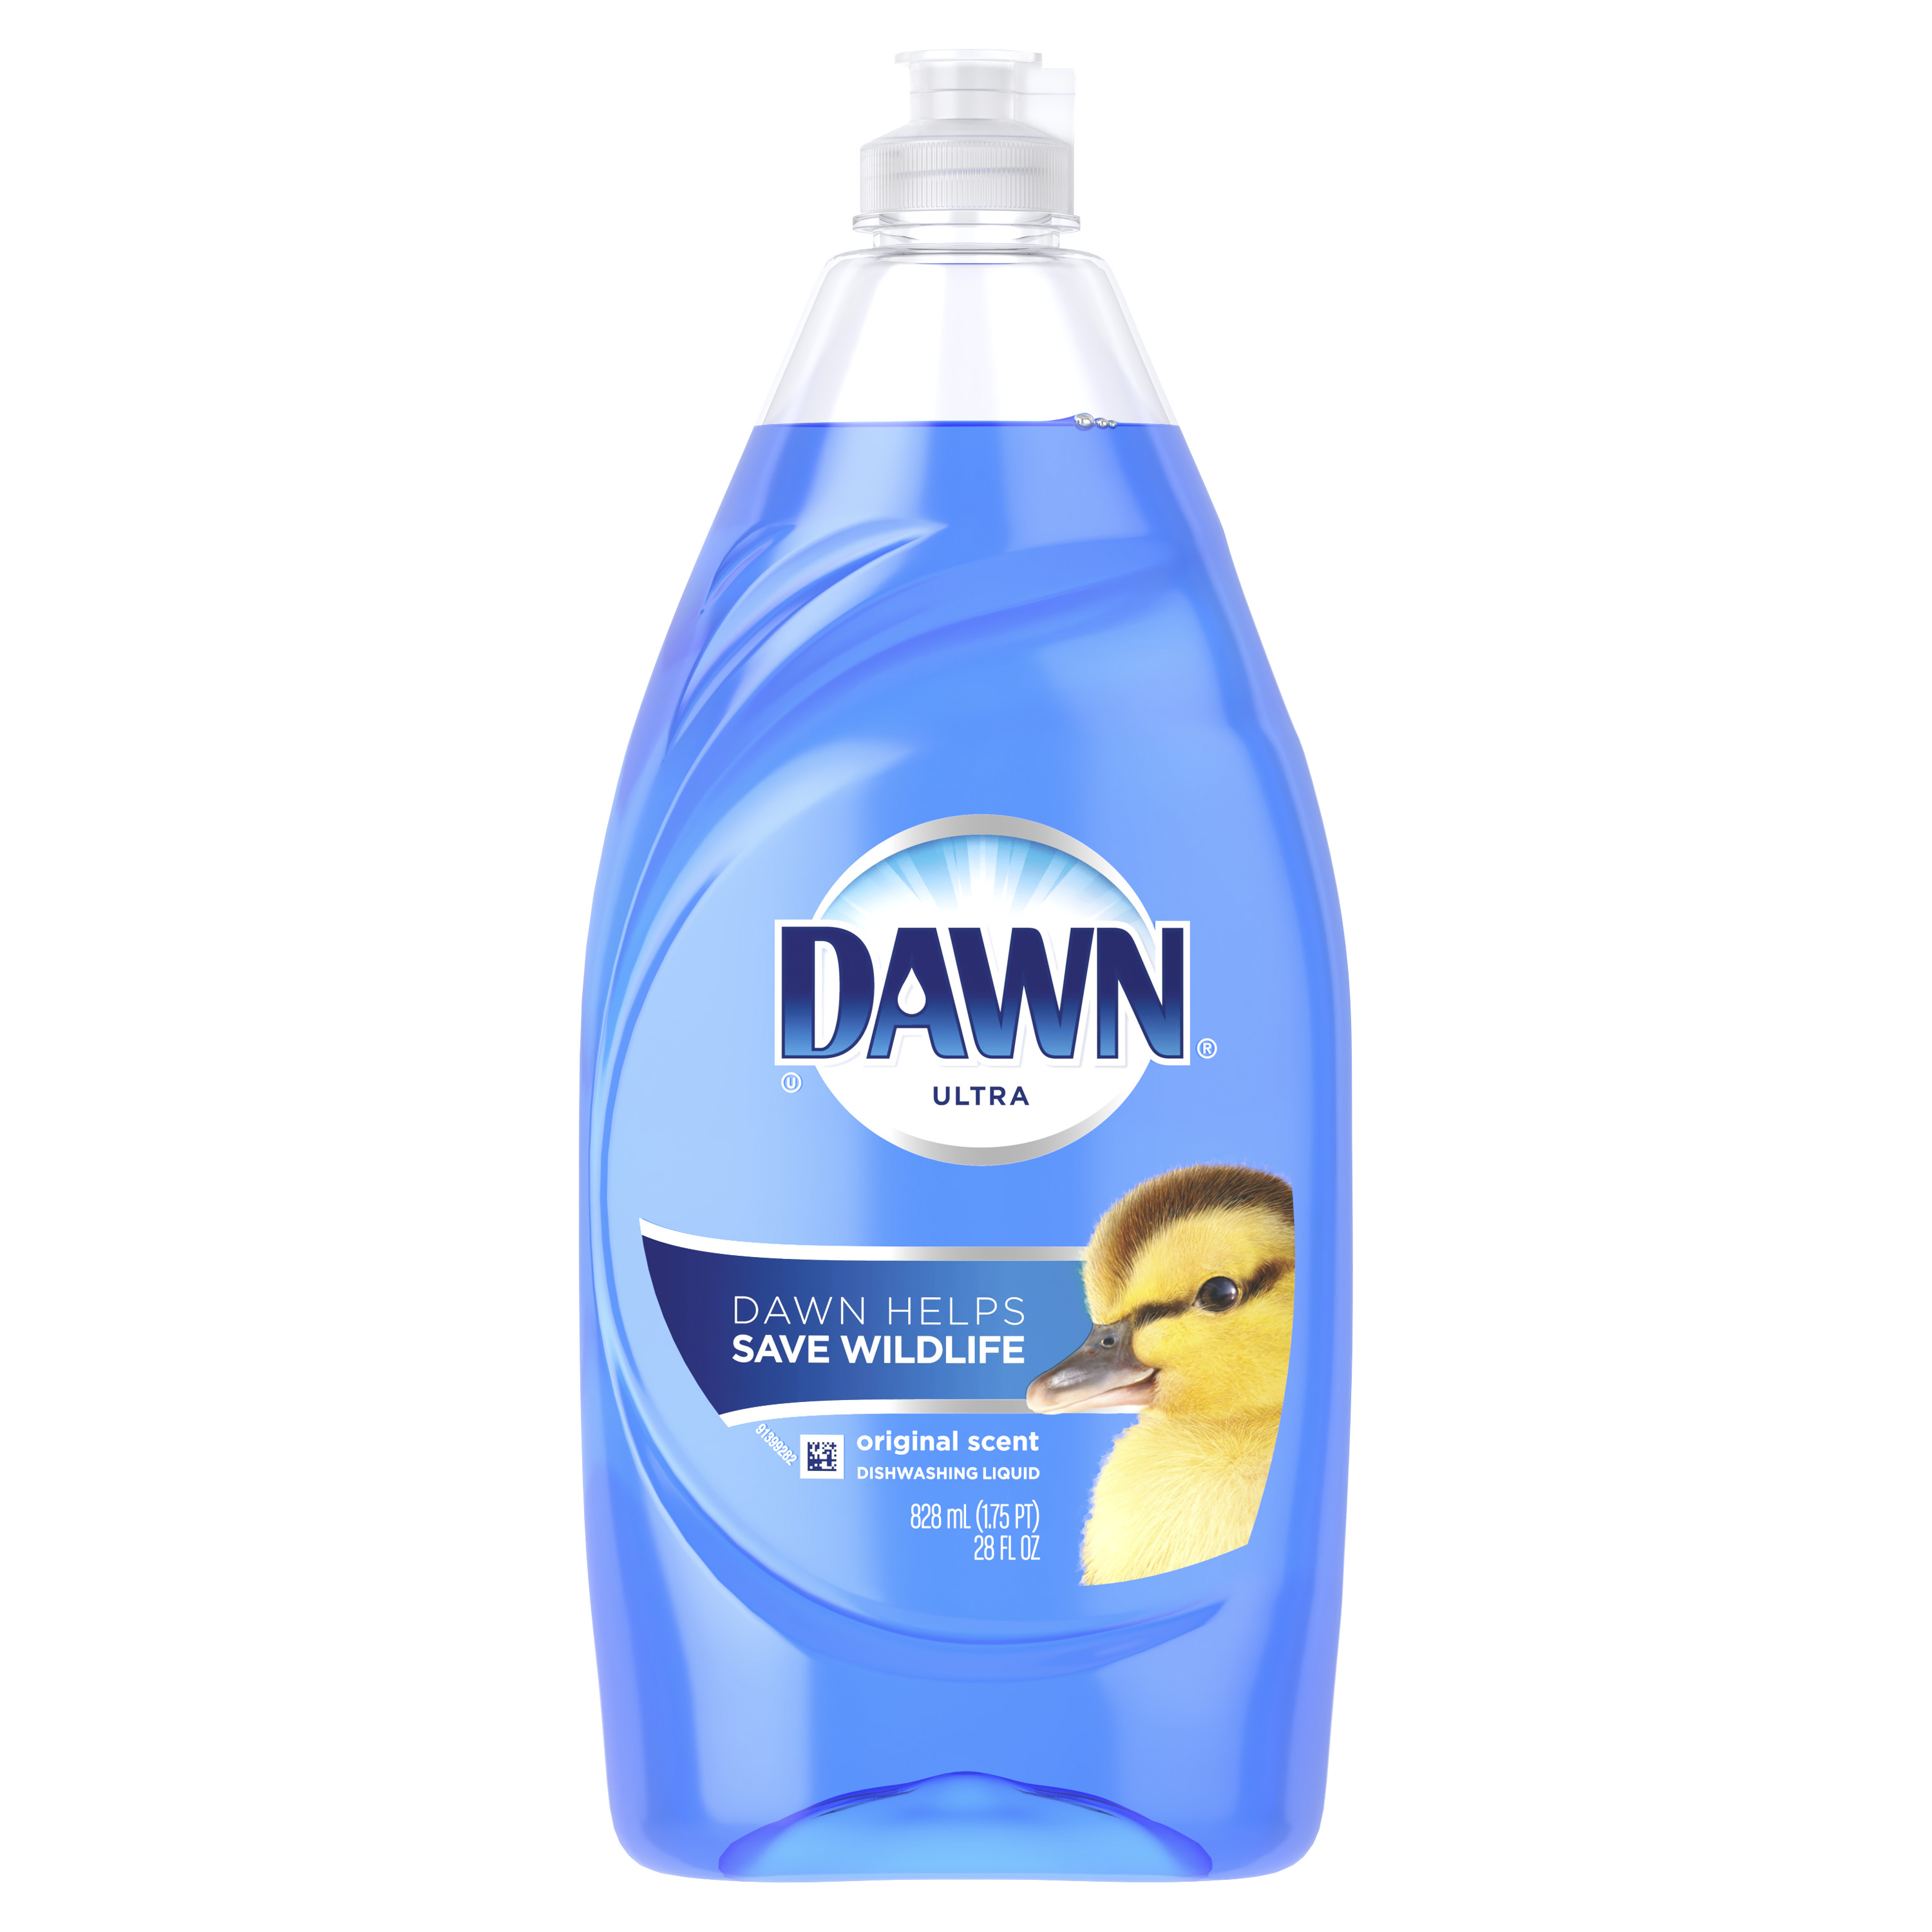 DAWN ULTRA DISH SOAP 28 OZ
ORIGINAL (8 PER CASE)